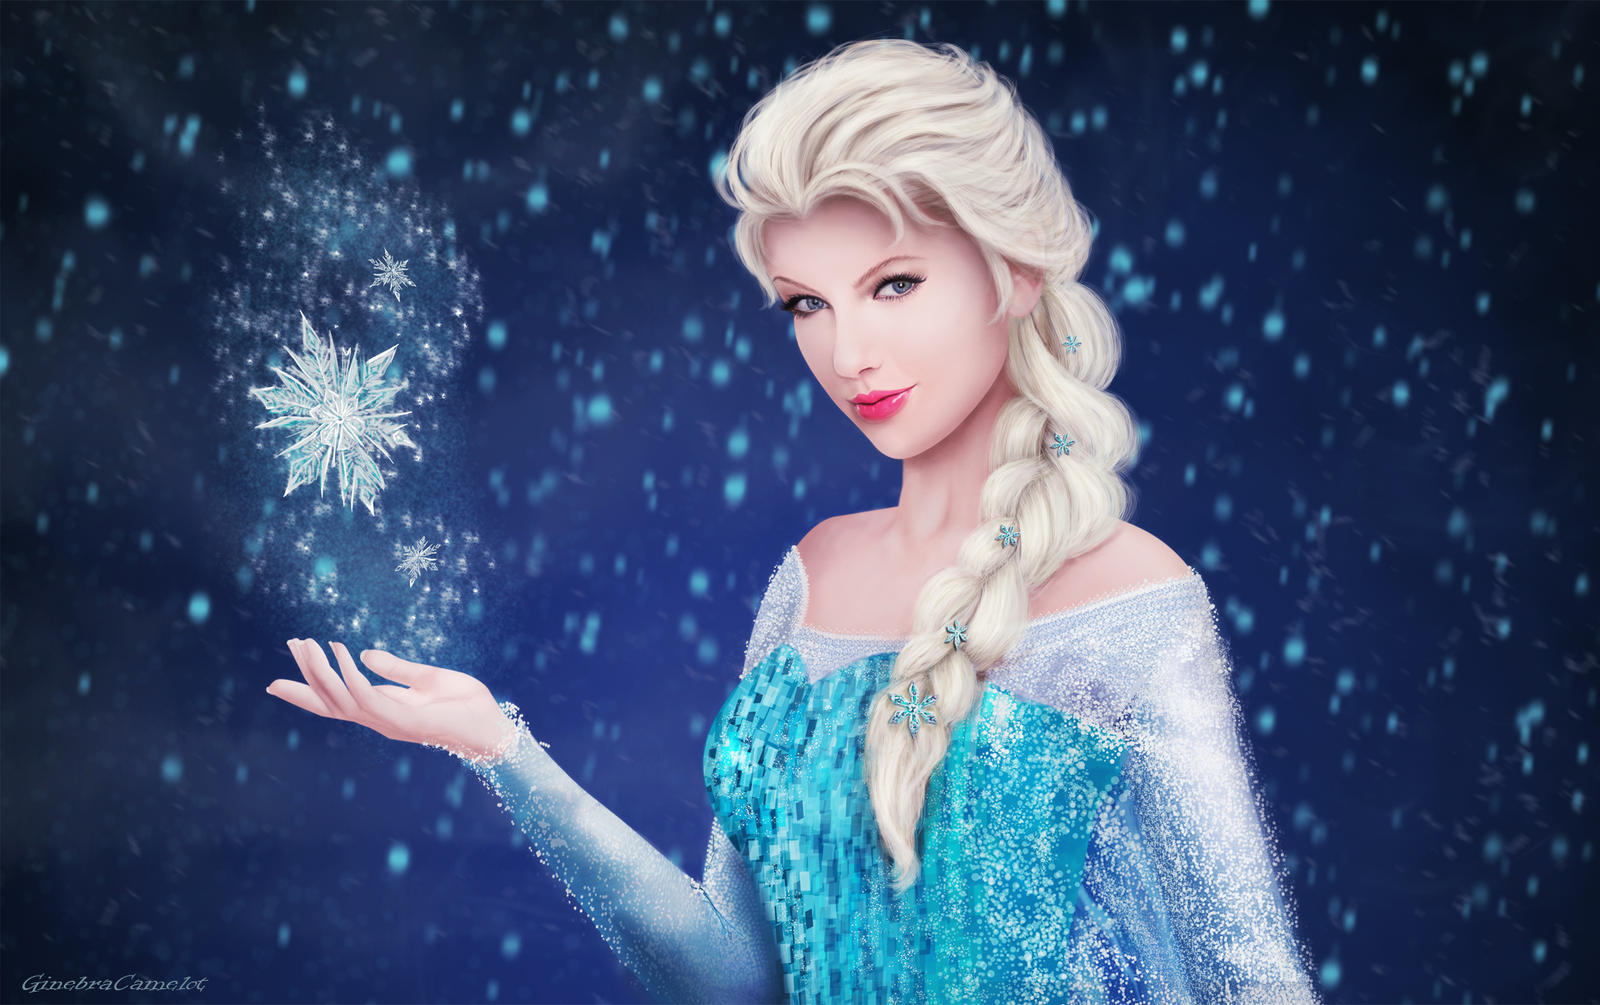 Elsa - Frozen Wallpaper by GinebraCamelot on DeviantArt